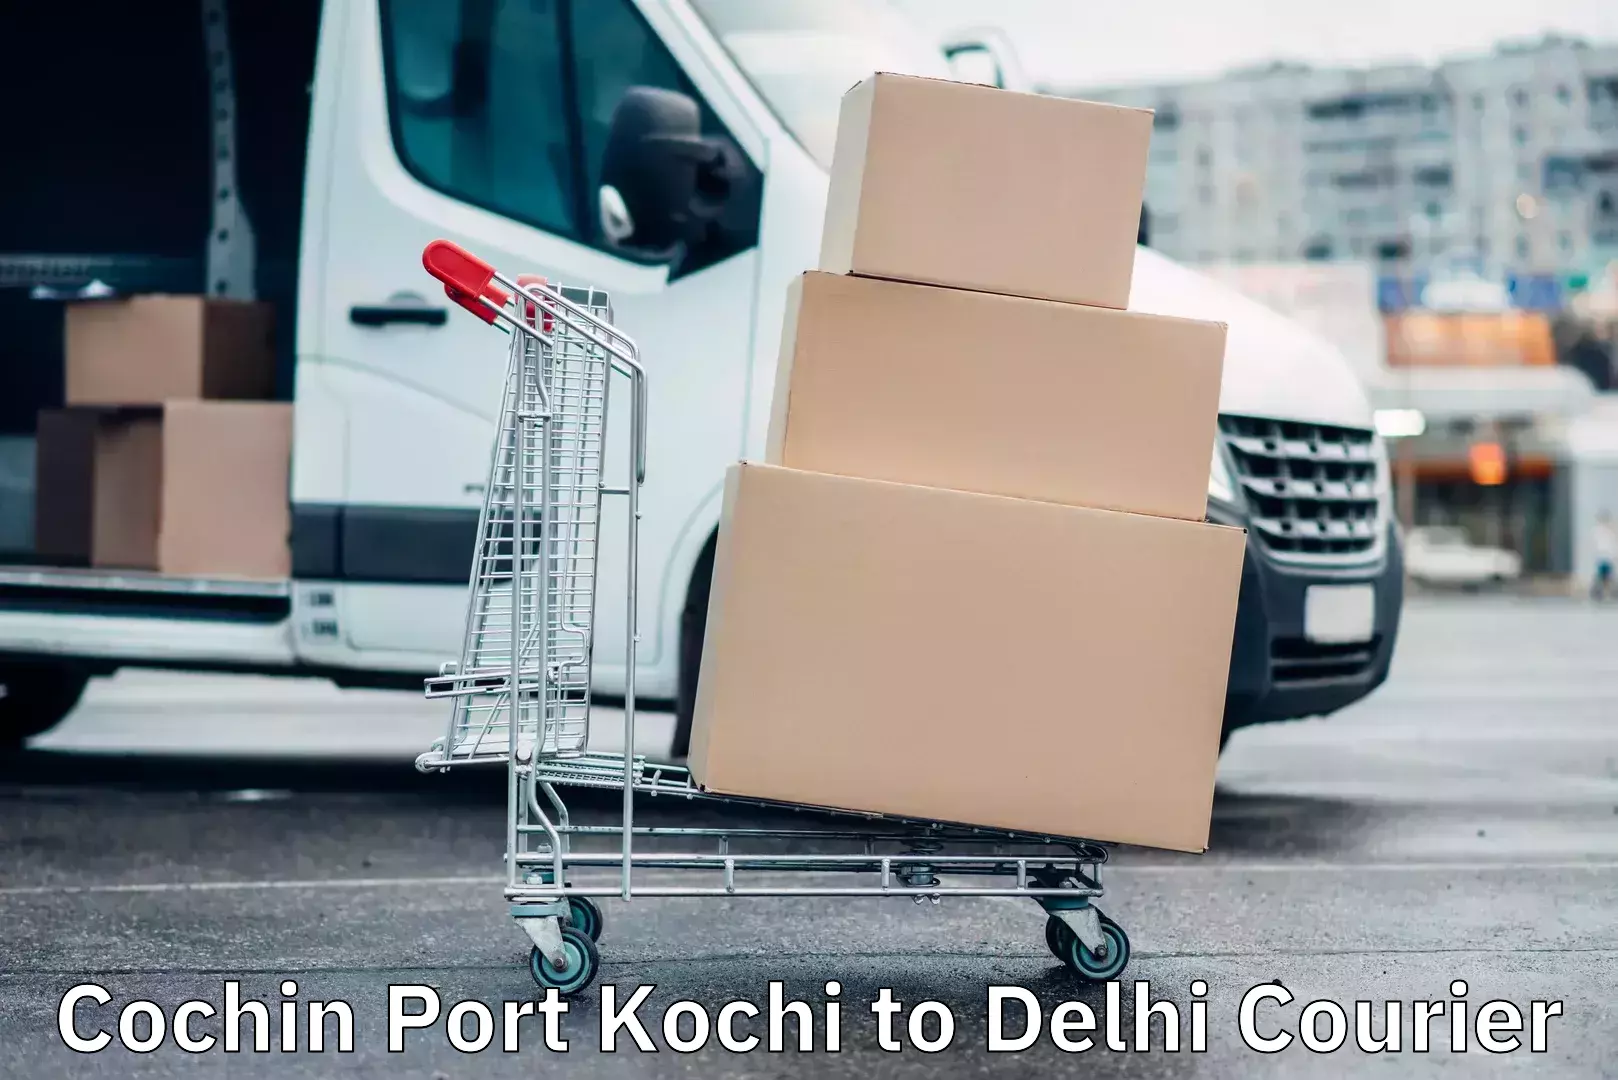 Cash on delivery service Cochin Port Kochi to Delhi